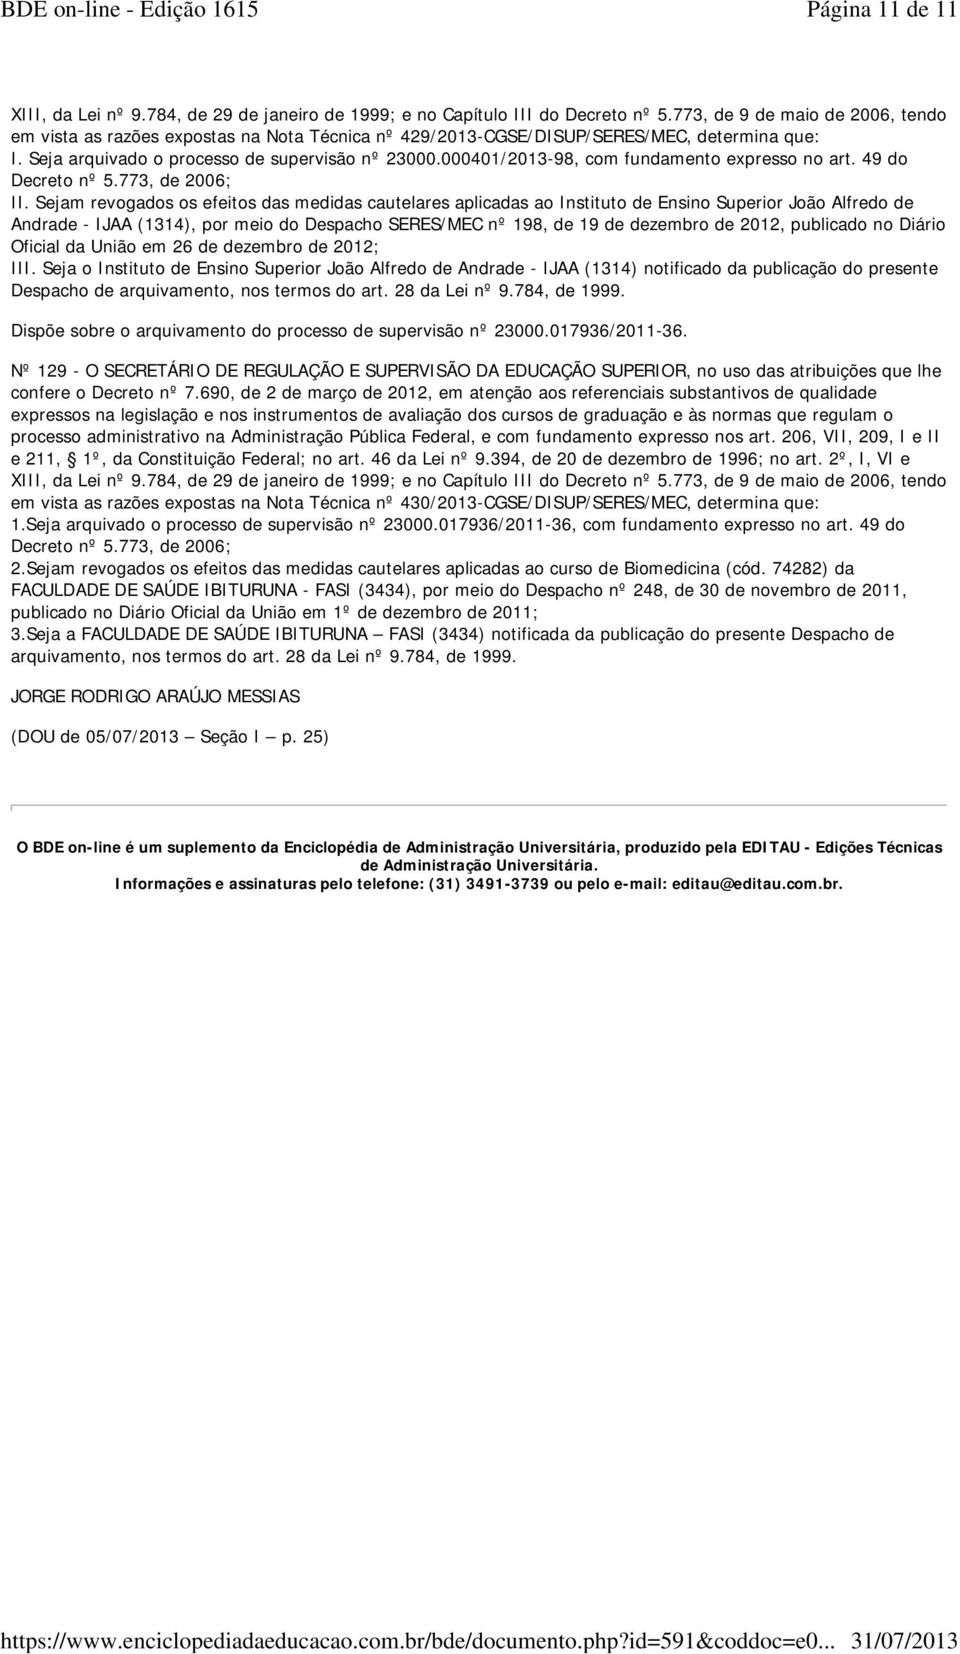 Sejam revogados os efeitos das medidas cautelares aplicadas ao Instituto de Ensino Superior João Alfredo de Andrade - IJAA (1314), por meio do Despacho SERES/MEC nº 198, de 19 de dezembro de 2012,